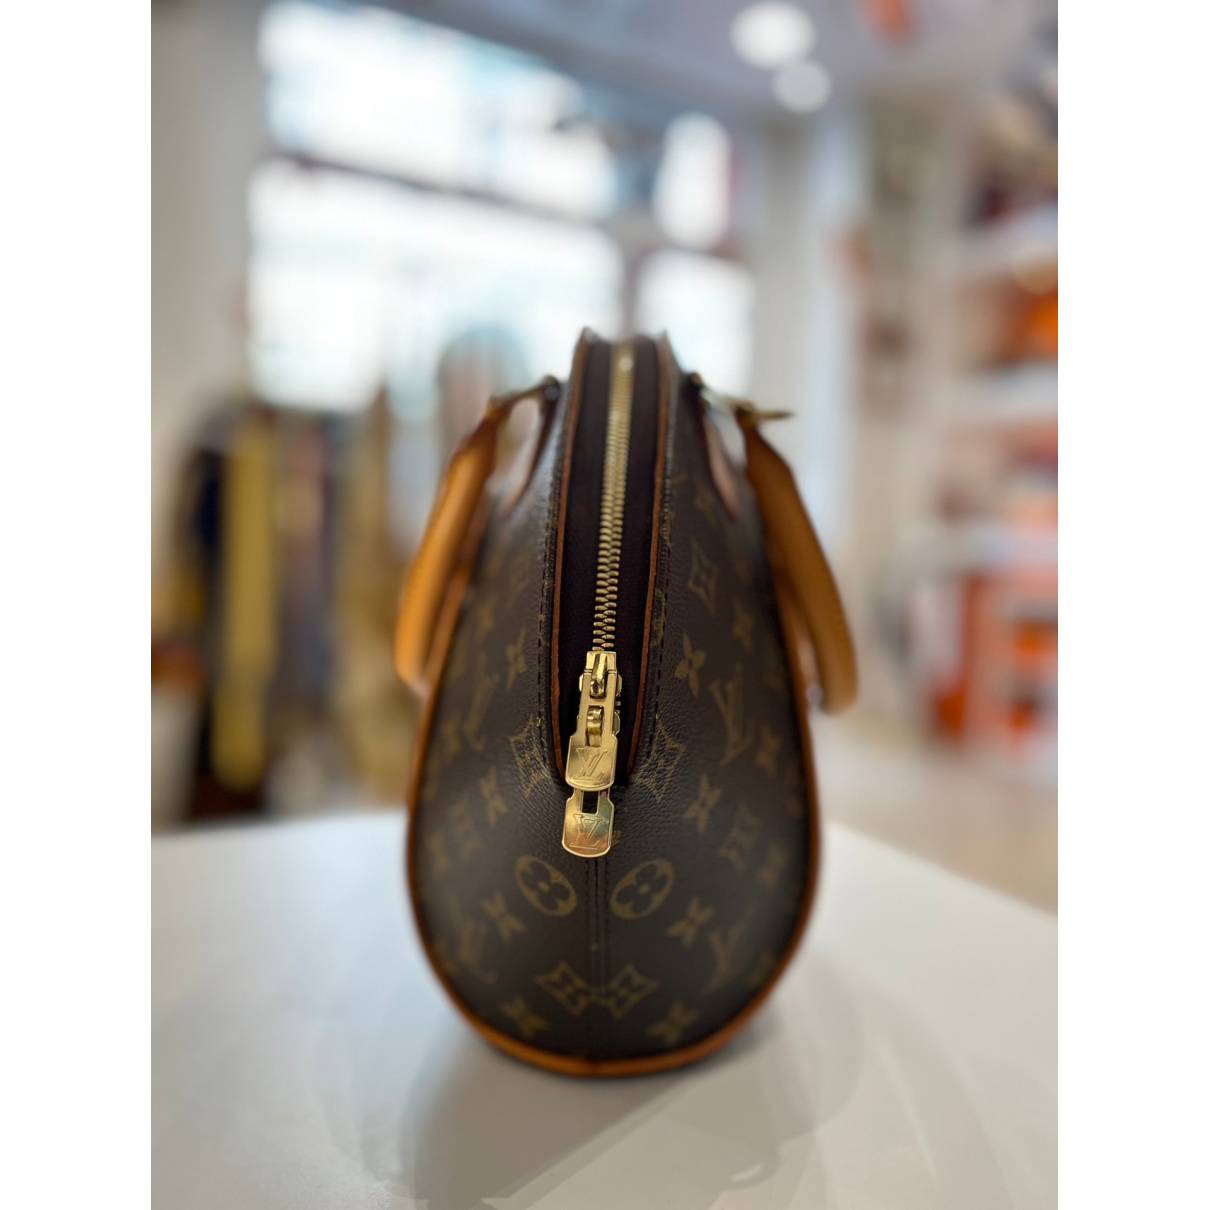 Louis Vuitton - Authenticated Ellipse Handbag - Cotton Brown Plain for Women, Very Good Condition